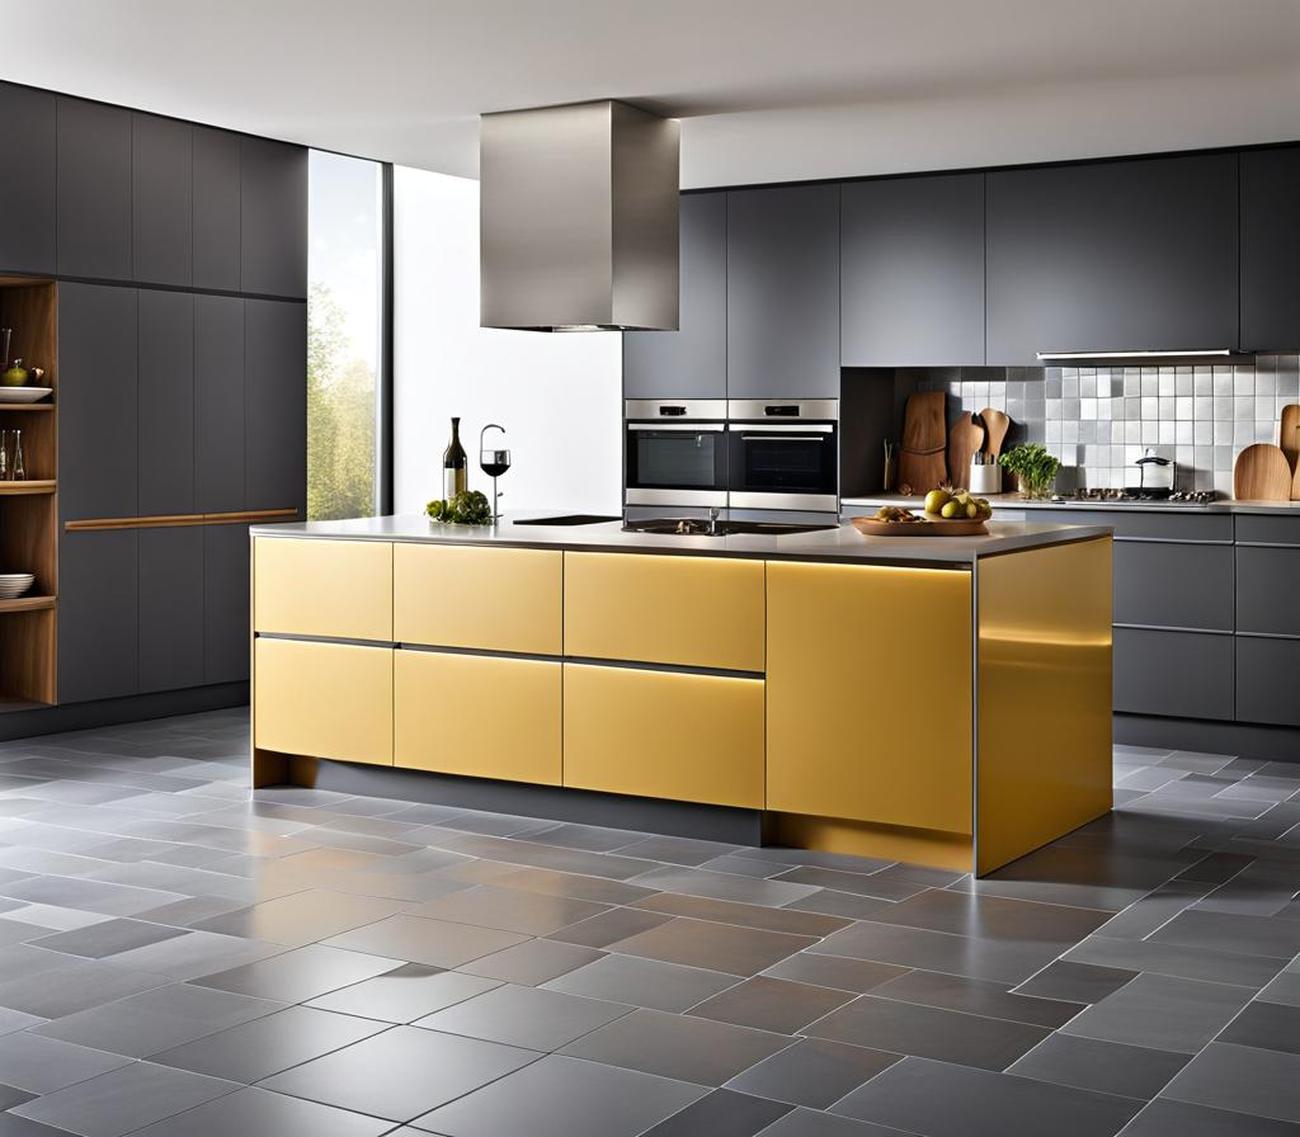 grey kitchen floor tiles ideas